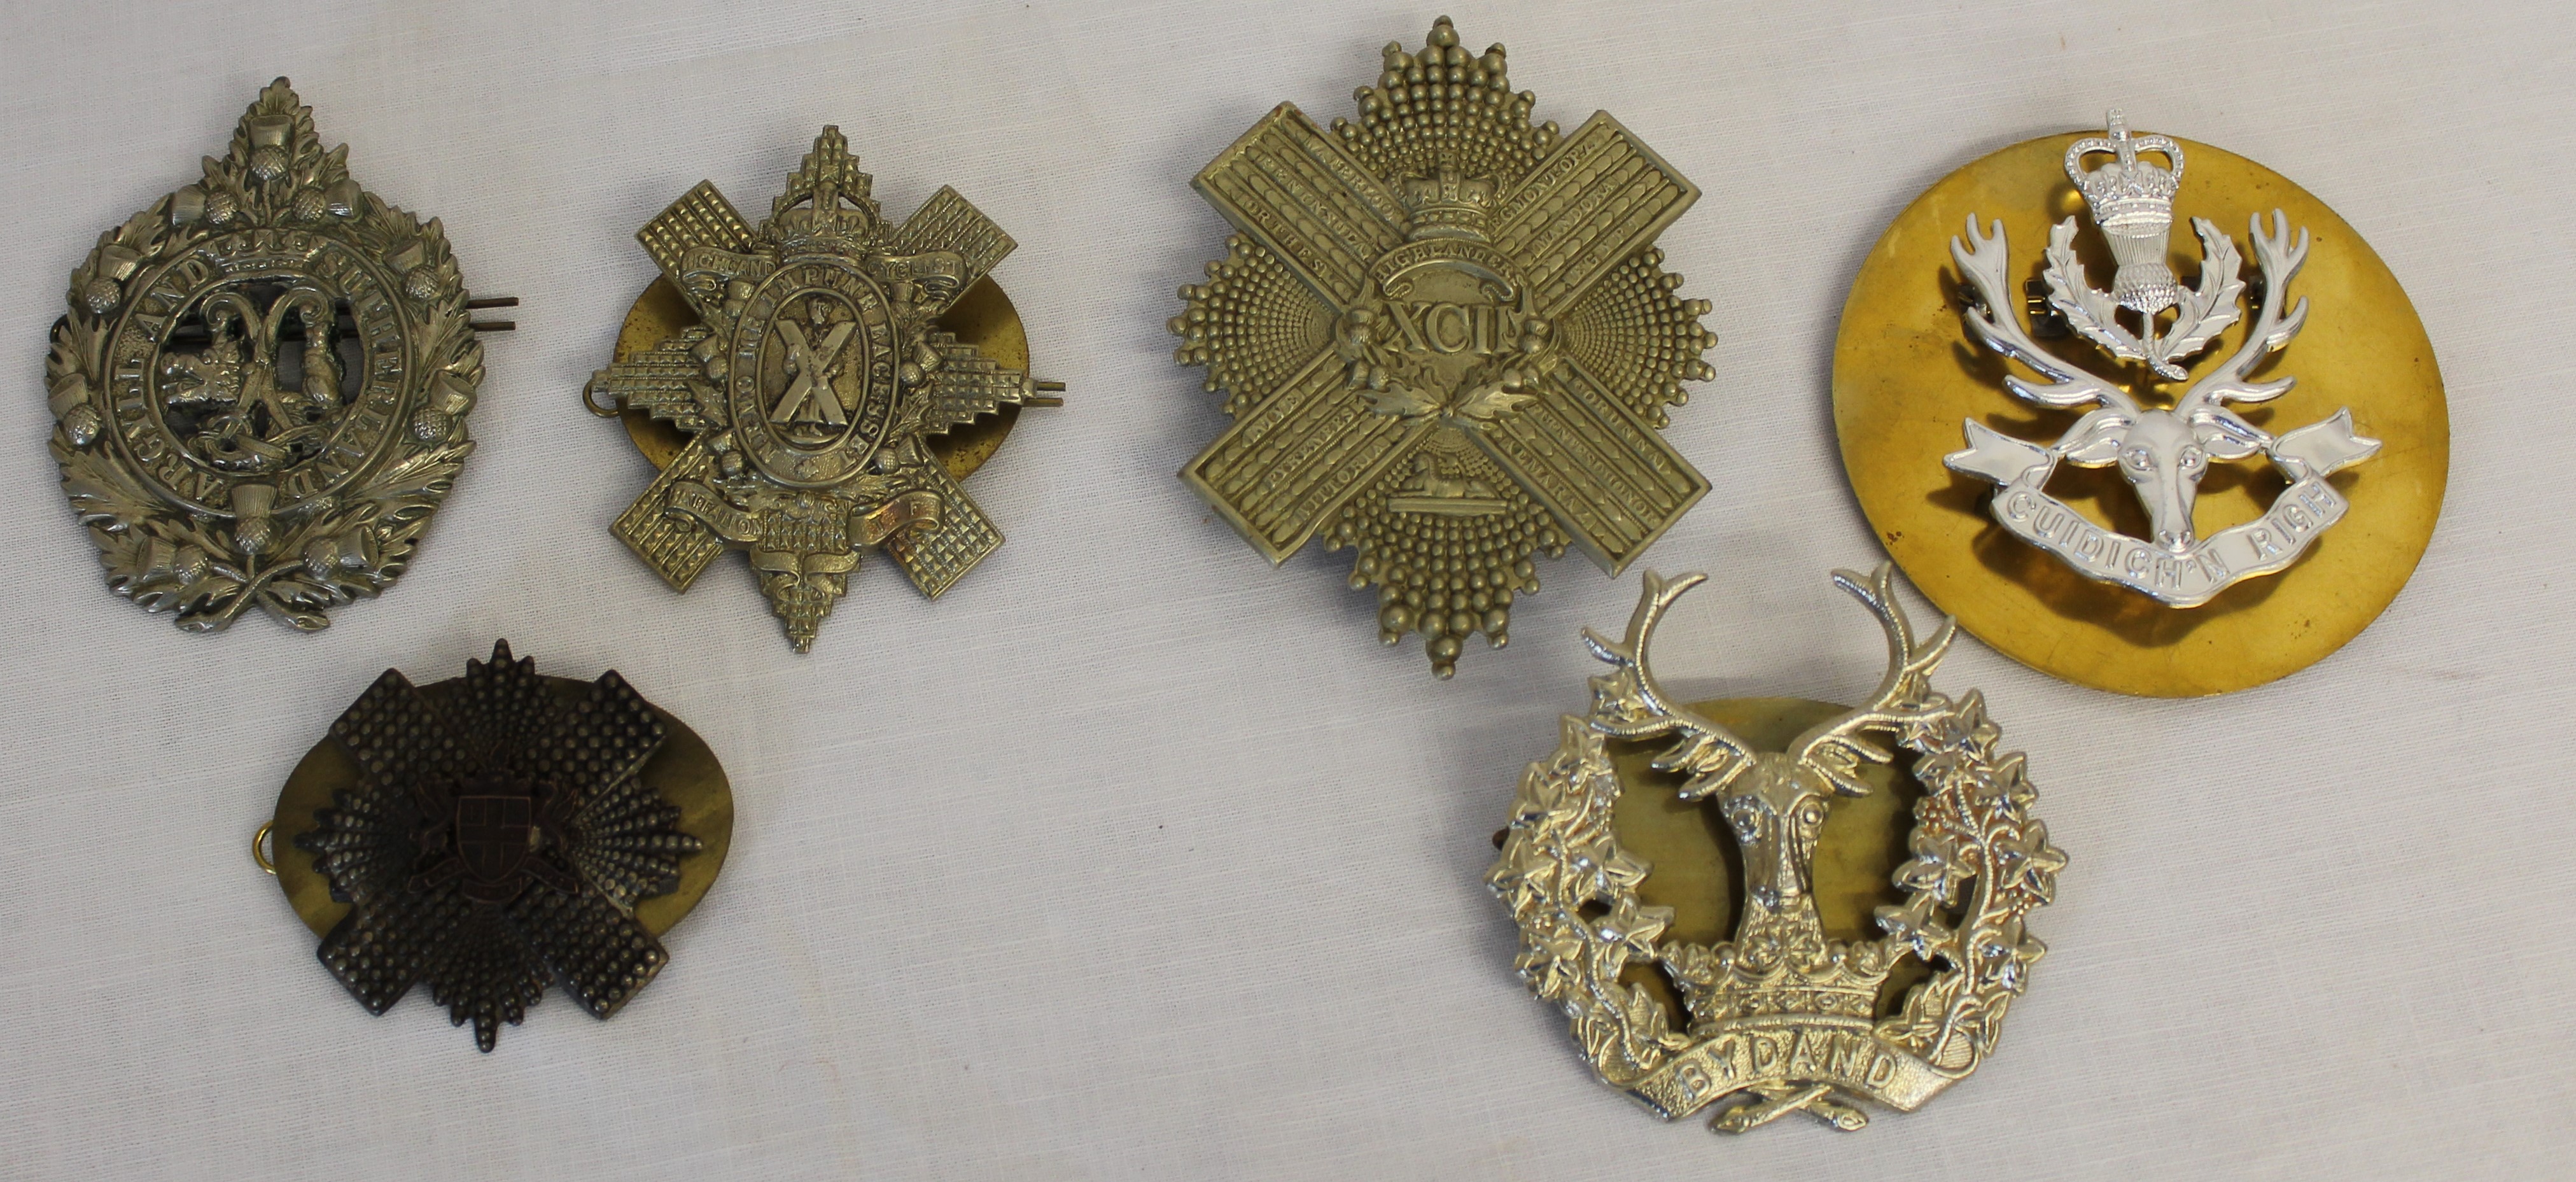 Six Scottish regimental cap badges - Image 2 of 3